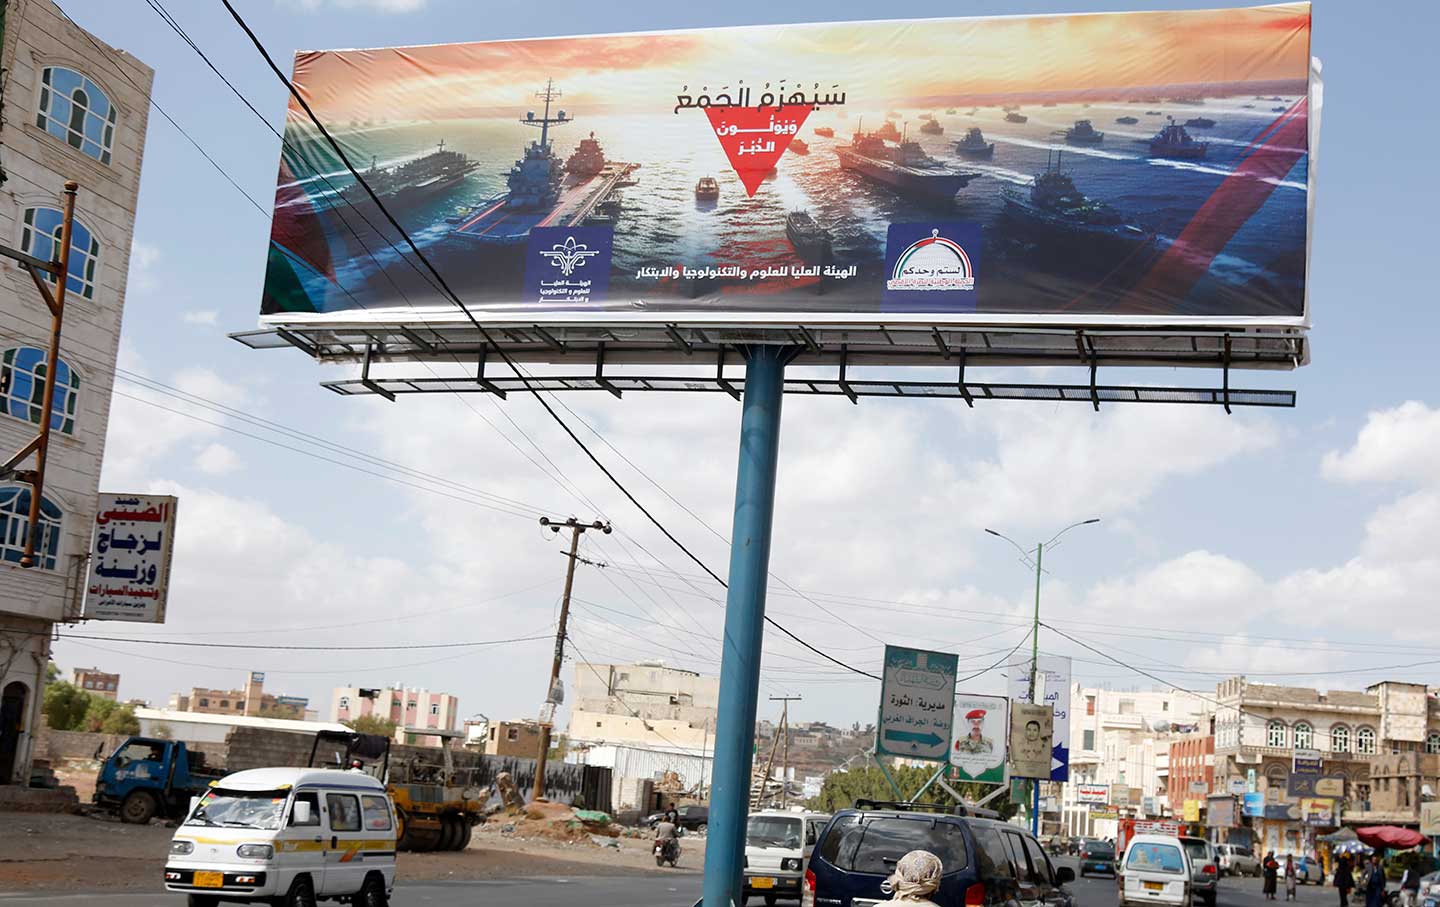 Jemeniten fahren am 31. Dezember 2023 auf einer Straße in Sana'a, Jemen, an einer Werbetafel vorbei, auf der die Marinezerstörer anderer Länder, darunter der USA und des Vereinigten Königreichs, und die Worte „Die Marinekoalition wird besiegt“ abgebildet sind.